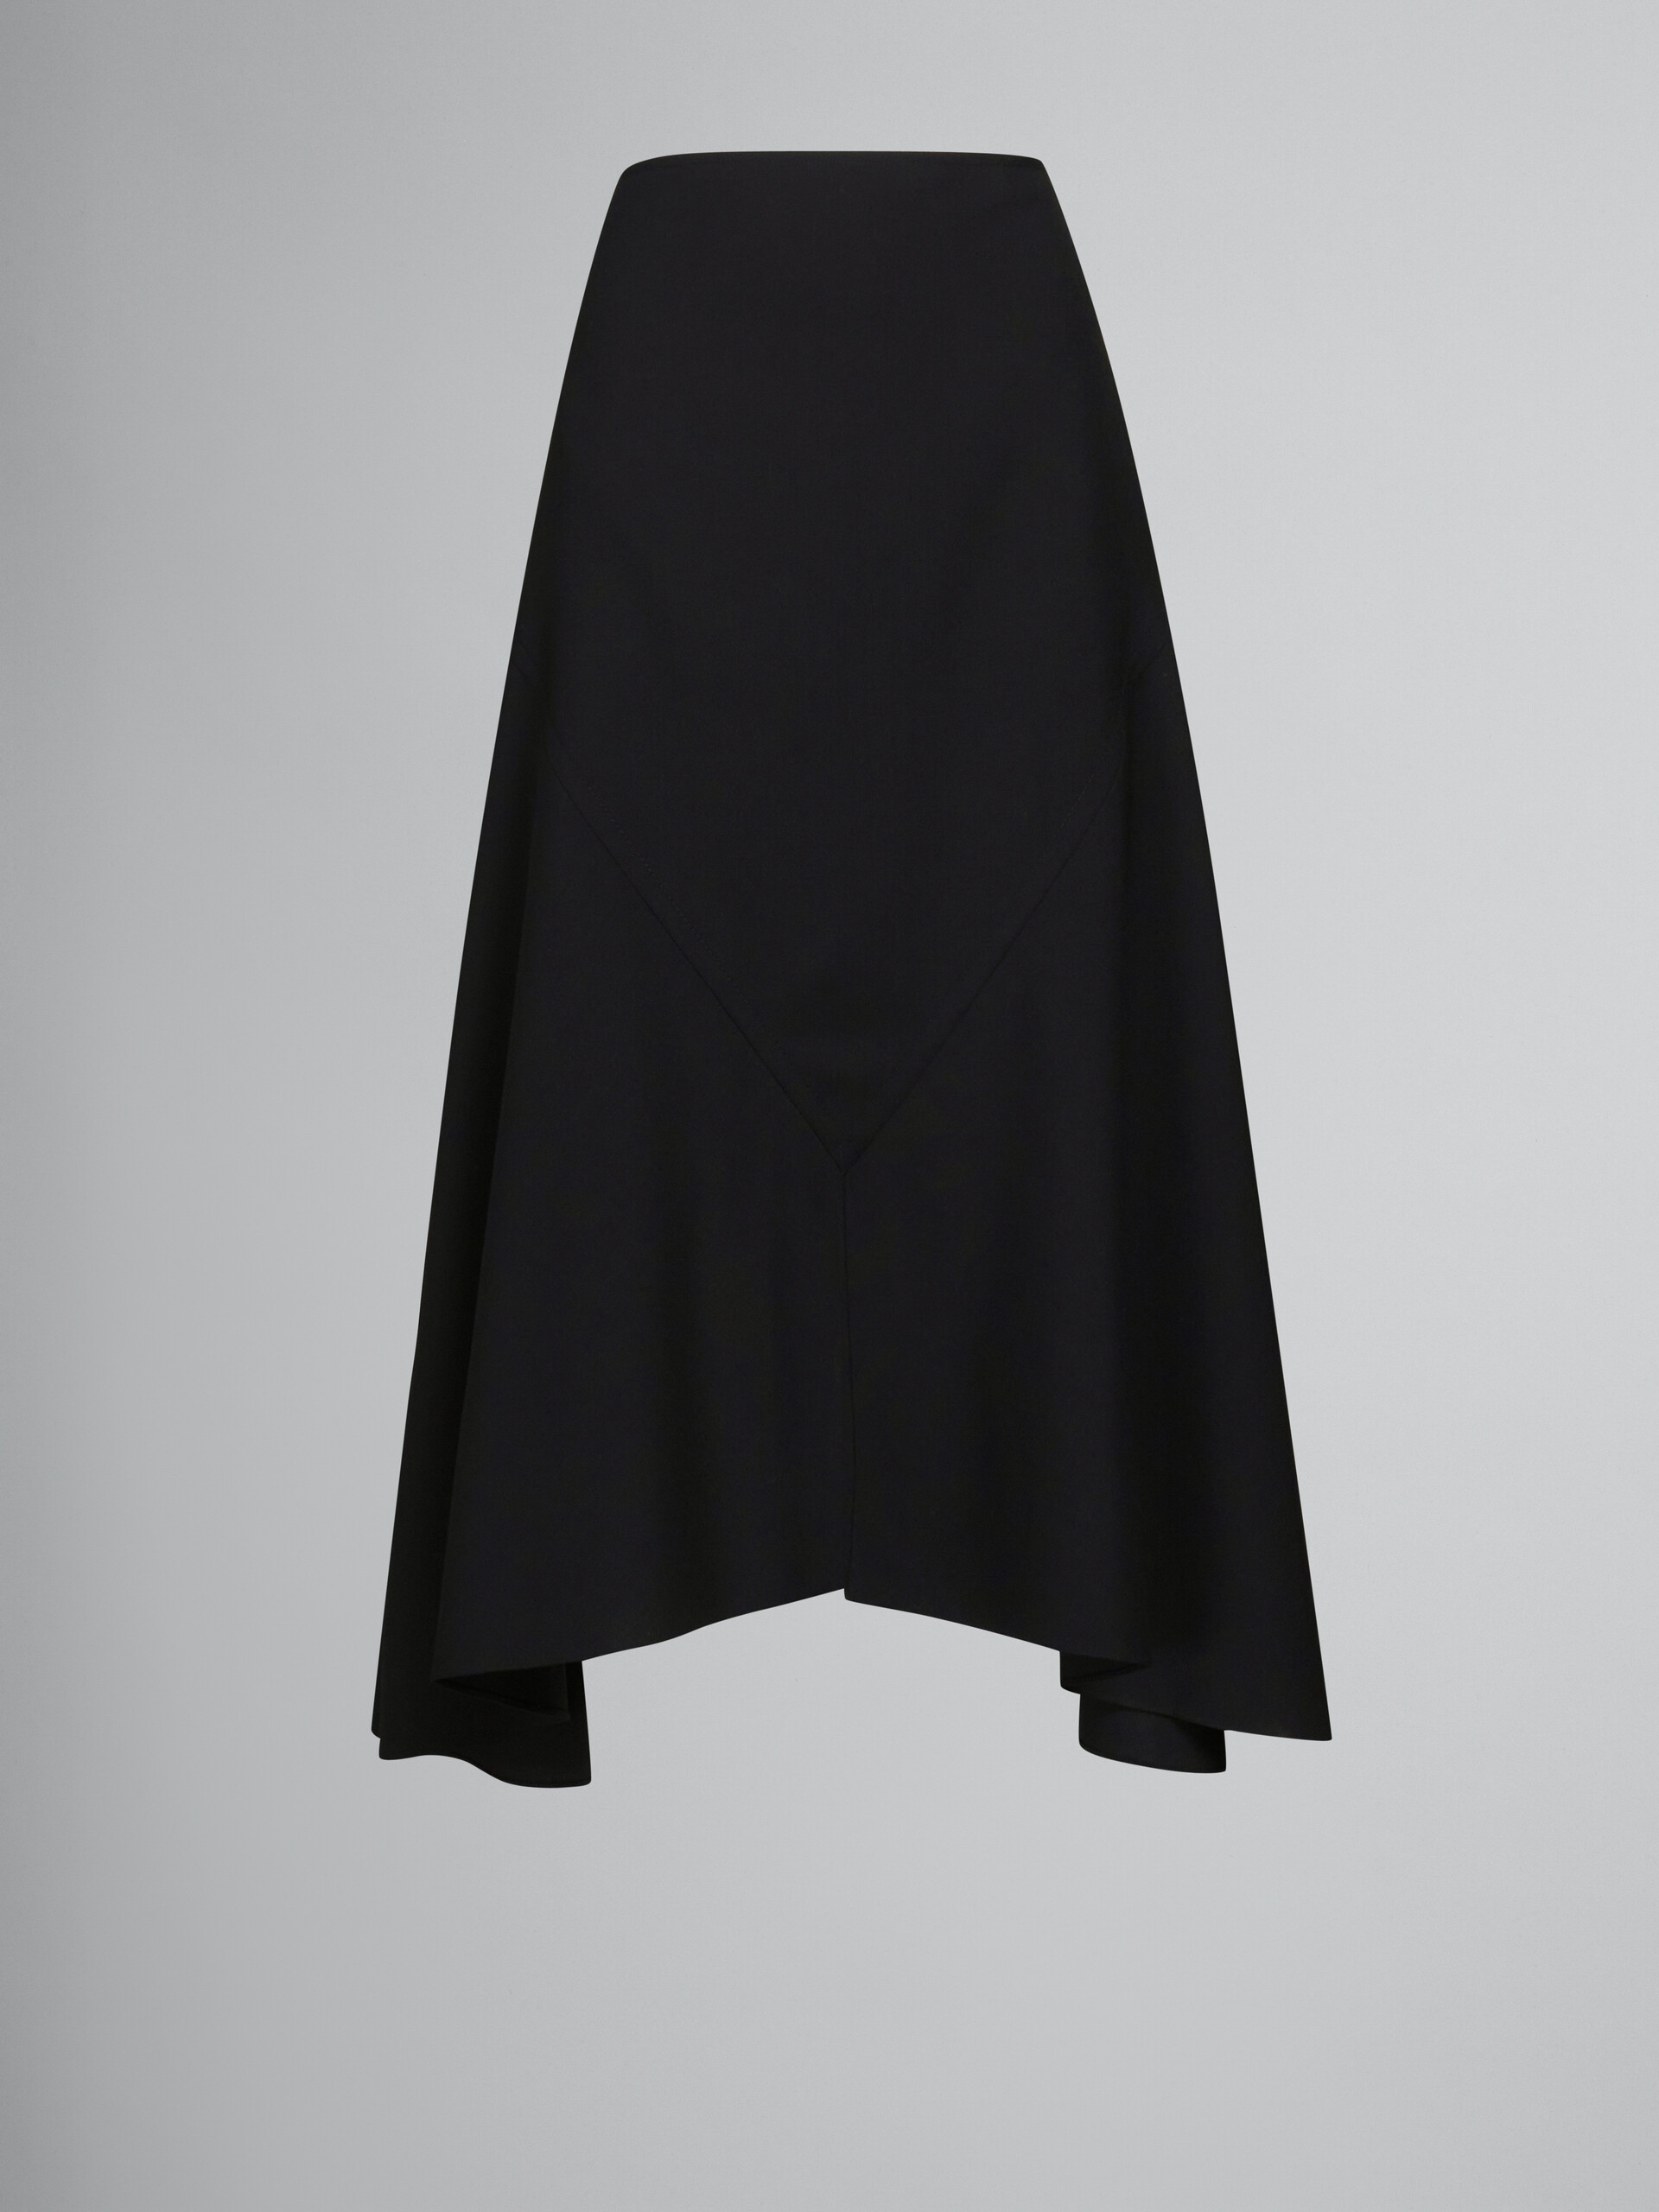 ブラック アシンメトリーヘム ウールスカート - スカート - Image 1